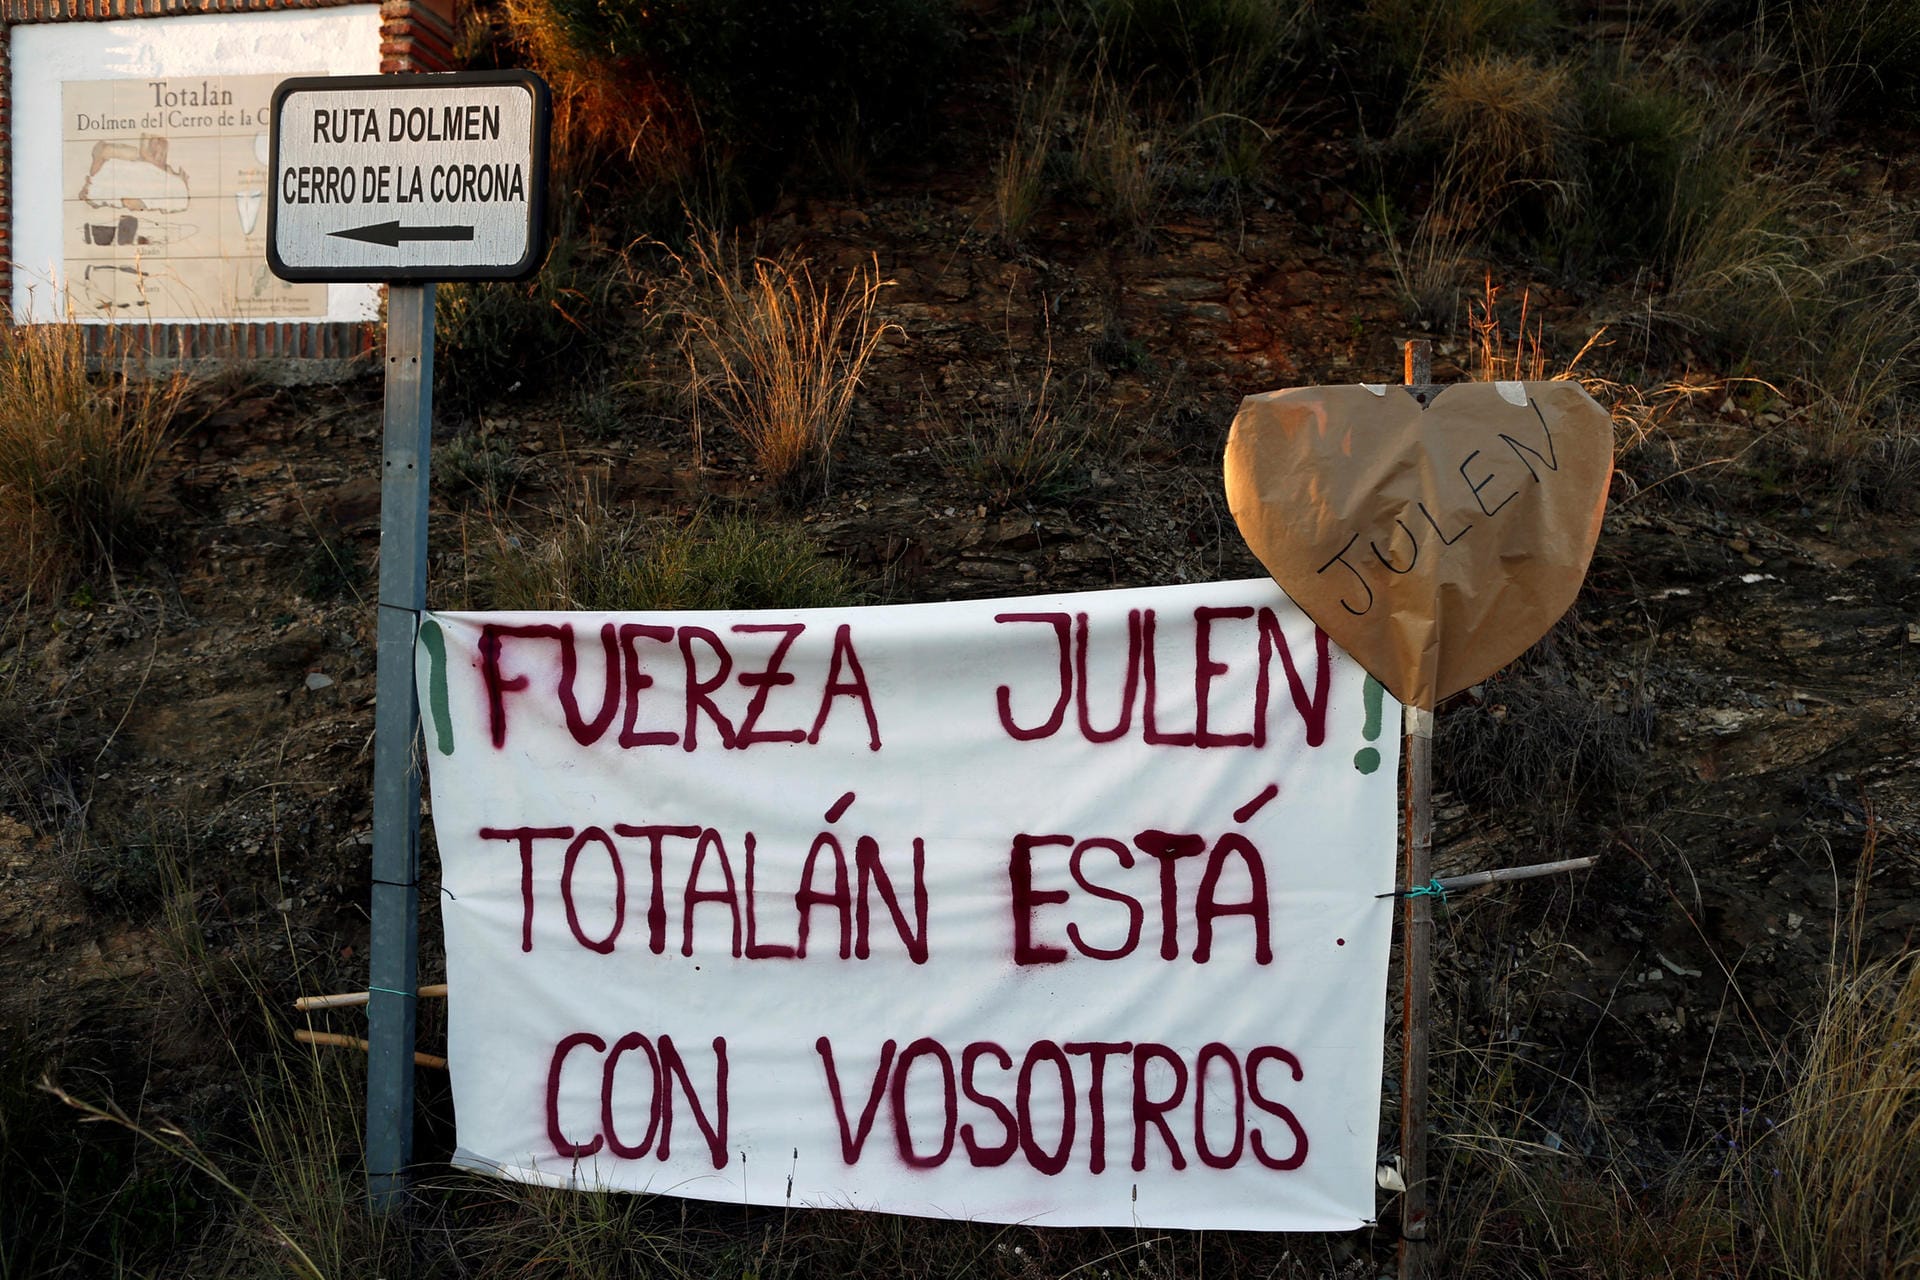 Der kleine Ort Totalán bangt mit den Eltern von Julen: "Halte durch, Julen!", steht auf dem Plakat. "Totalán steht euch bei".